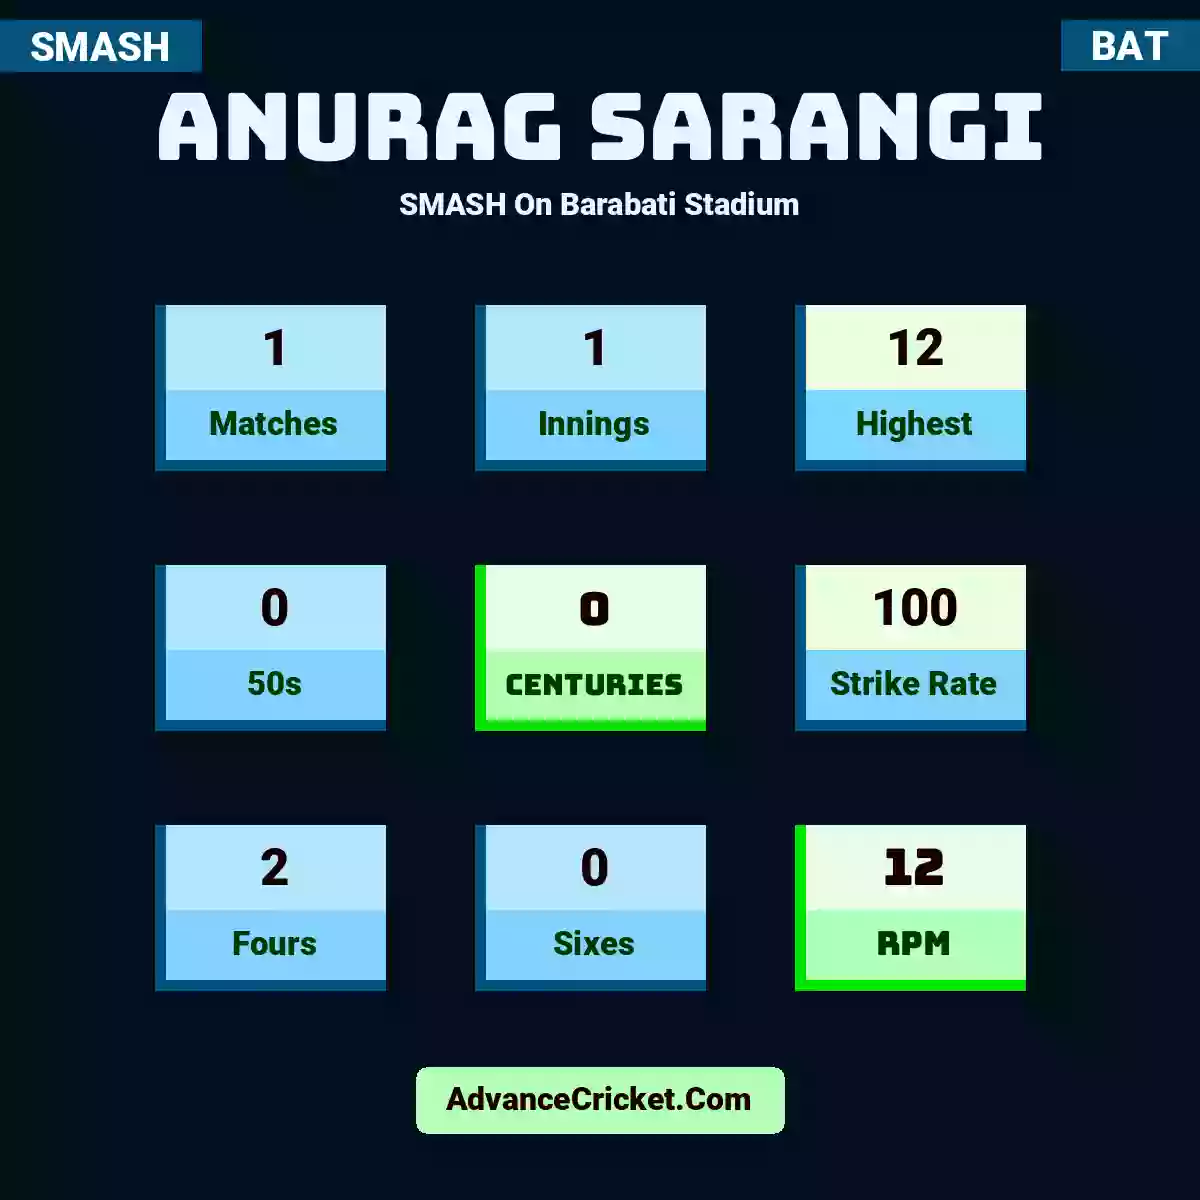 Anurag Sarangi SMASH  On Barabati Stadium, Anurag Sarangi played 1 matches, scored 12 runs as highest, 0 half-centuries, and 0 centuries, with a strike rate of 100. A.Sarangi hit 2 fours and 0 sixes, with an RPM of 12.